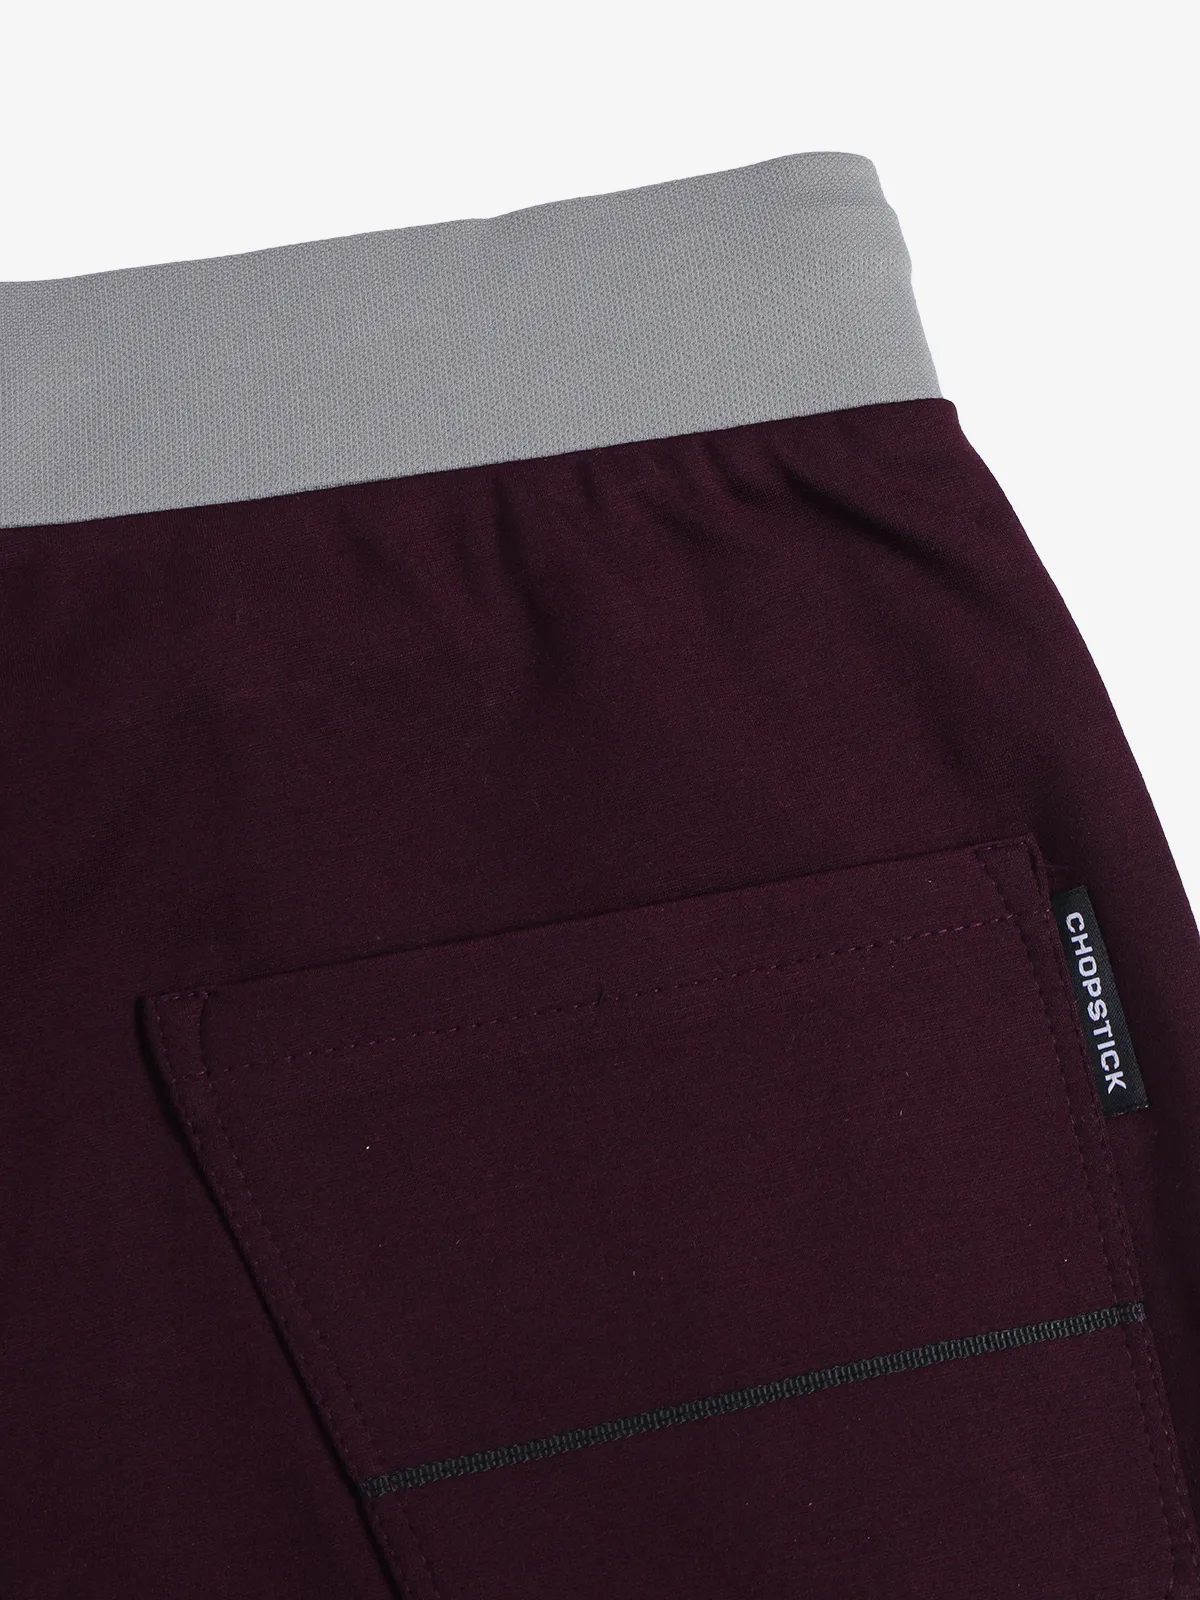 CHOPSTICK purple solid cotton shorts